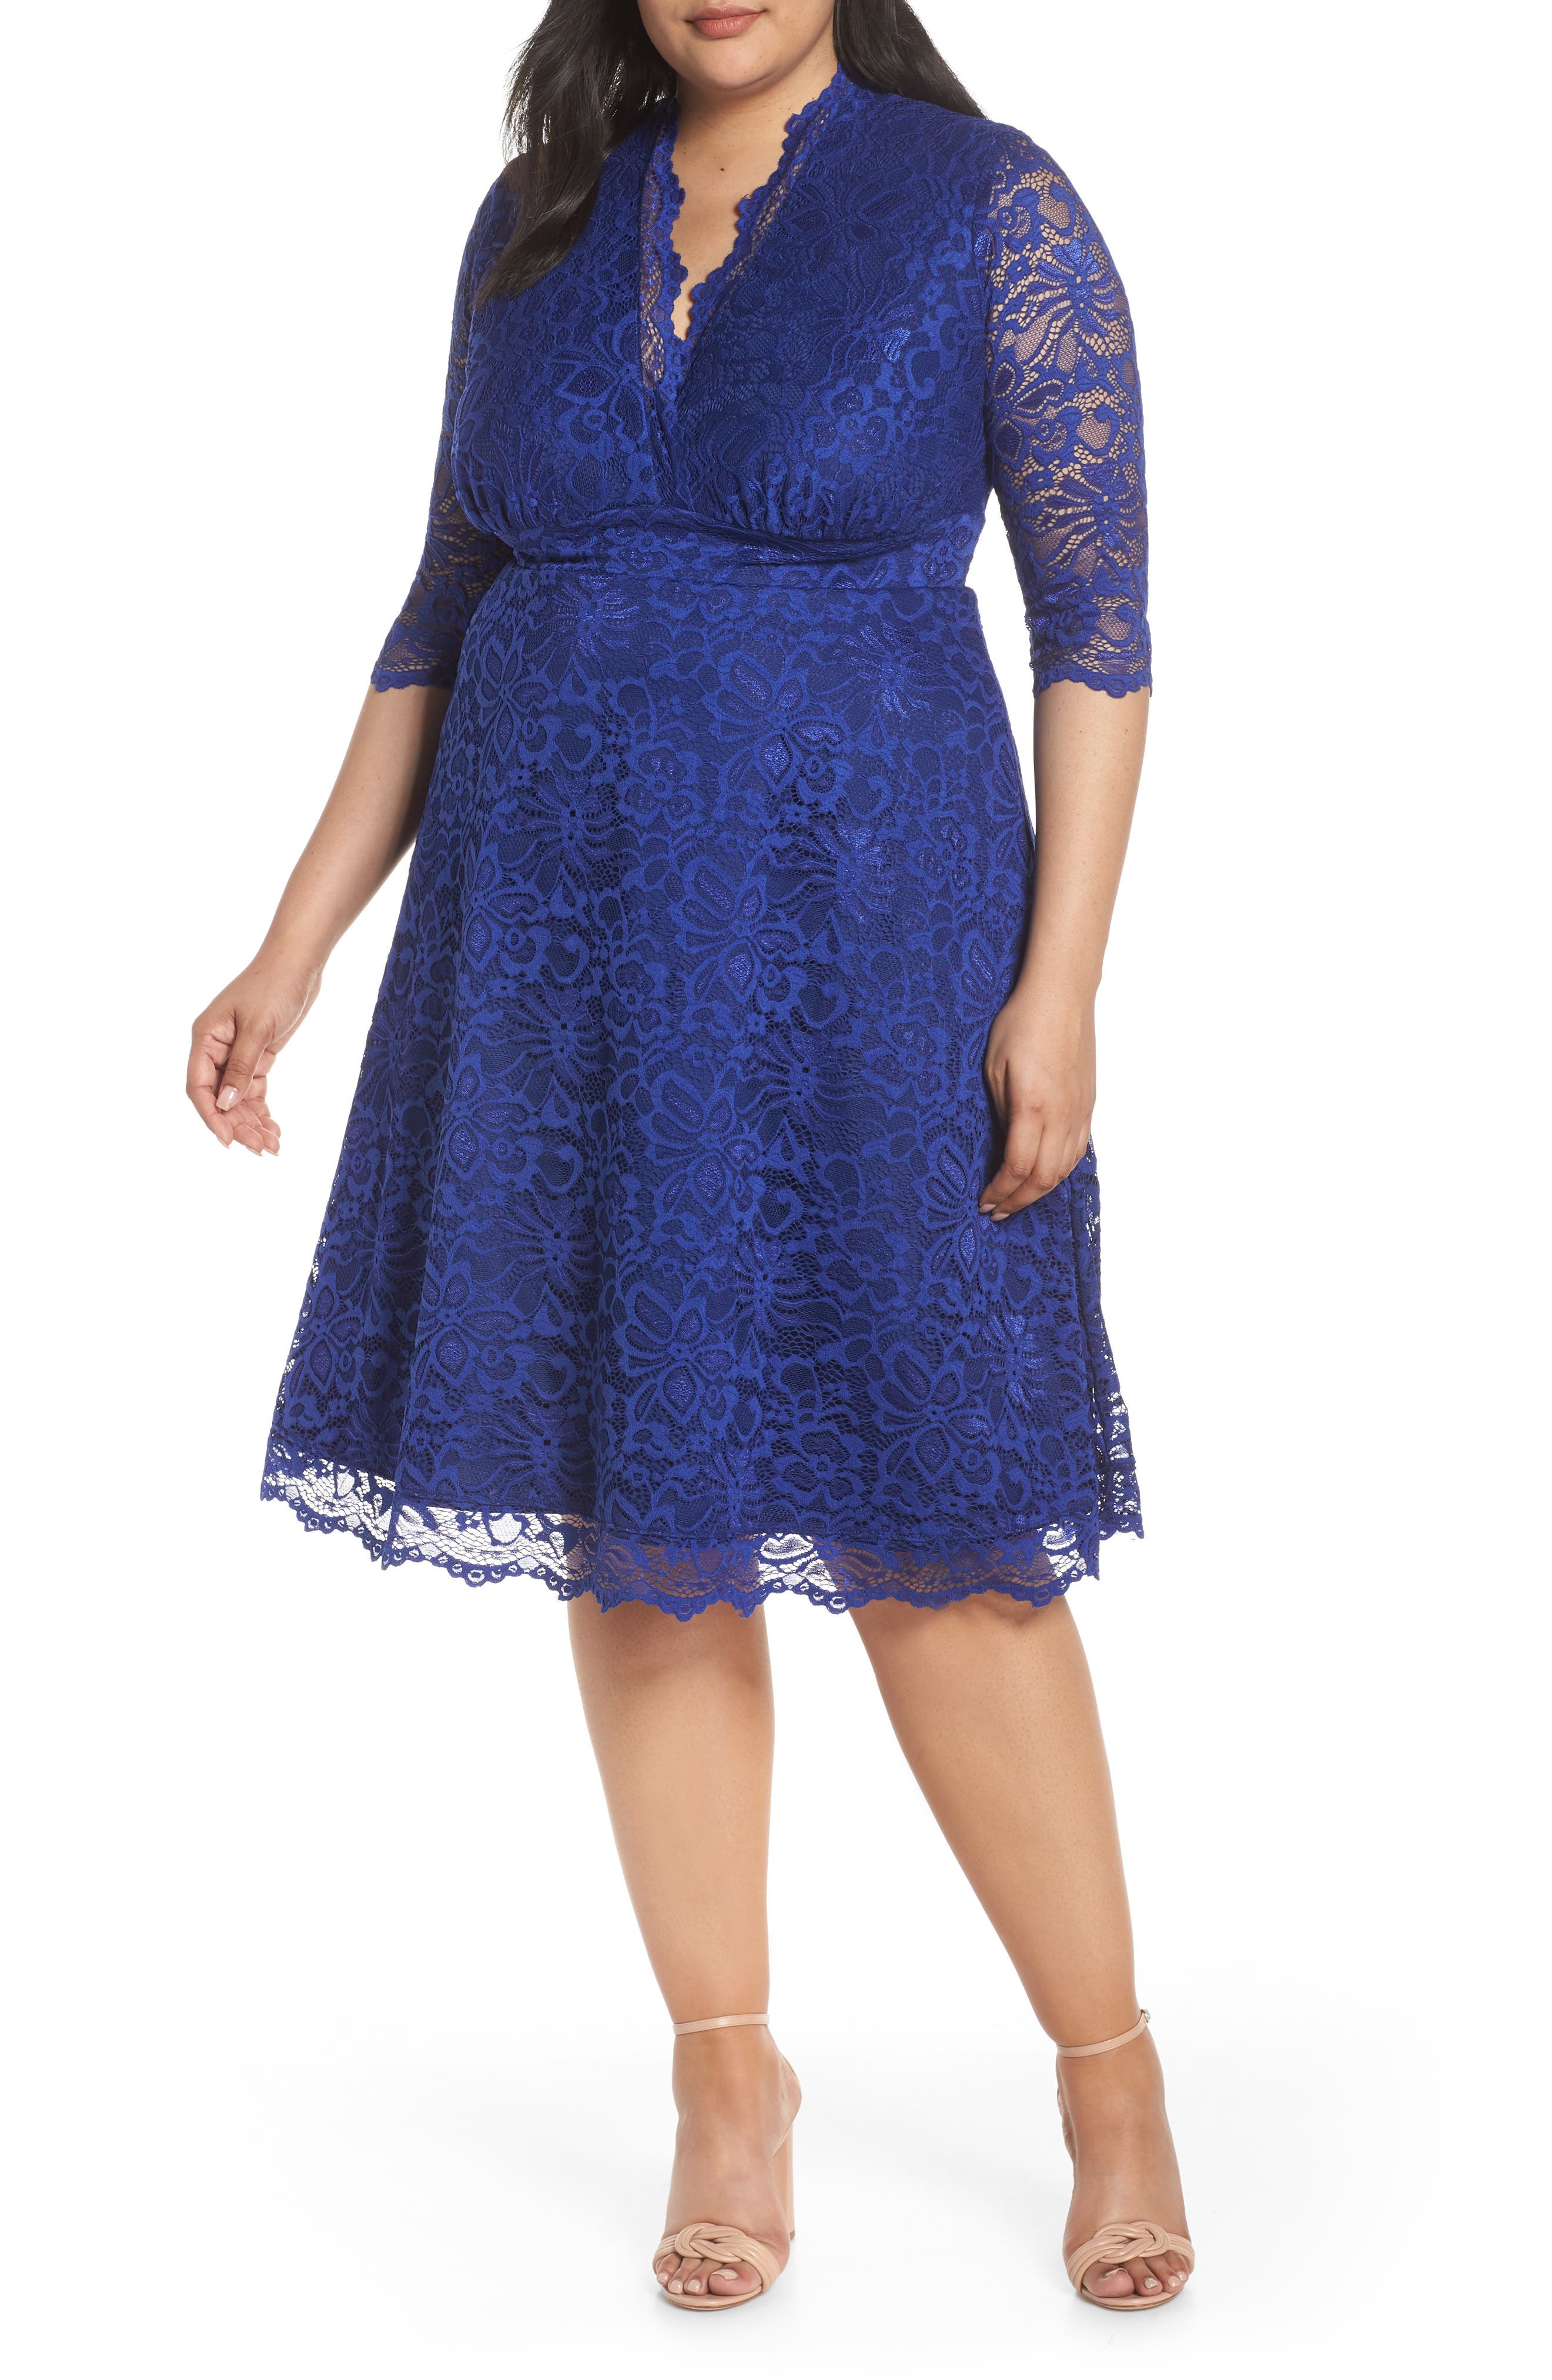 blue dress plus size